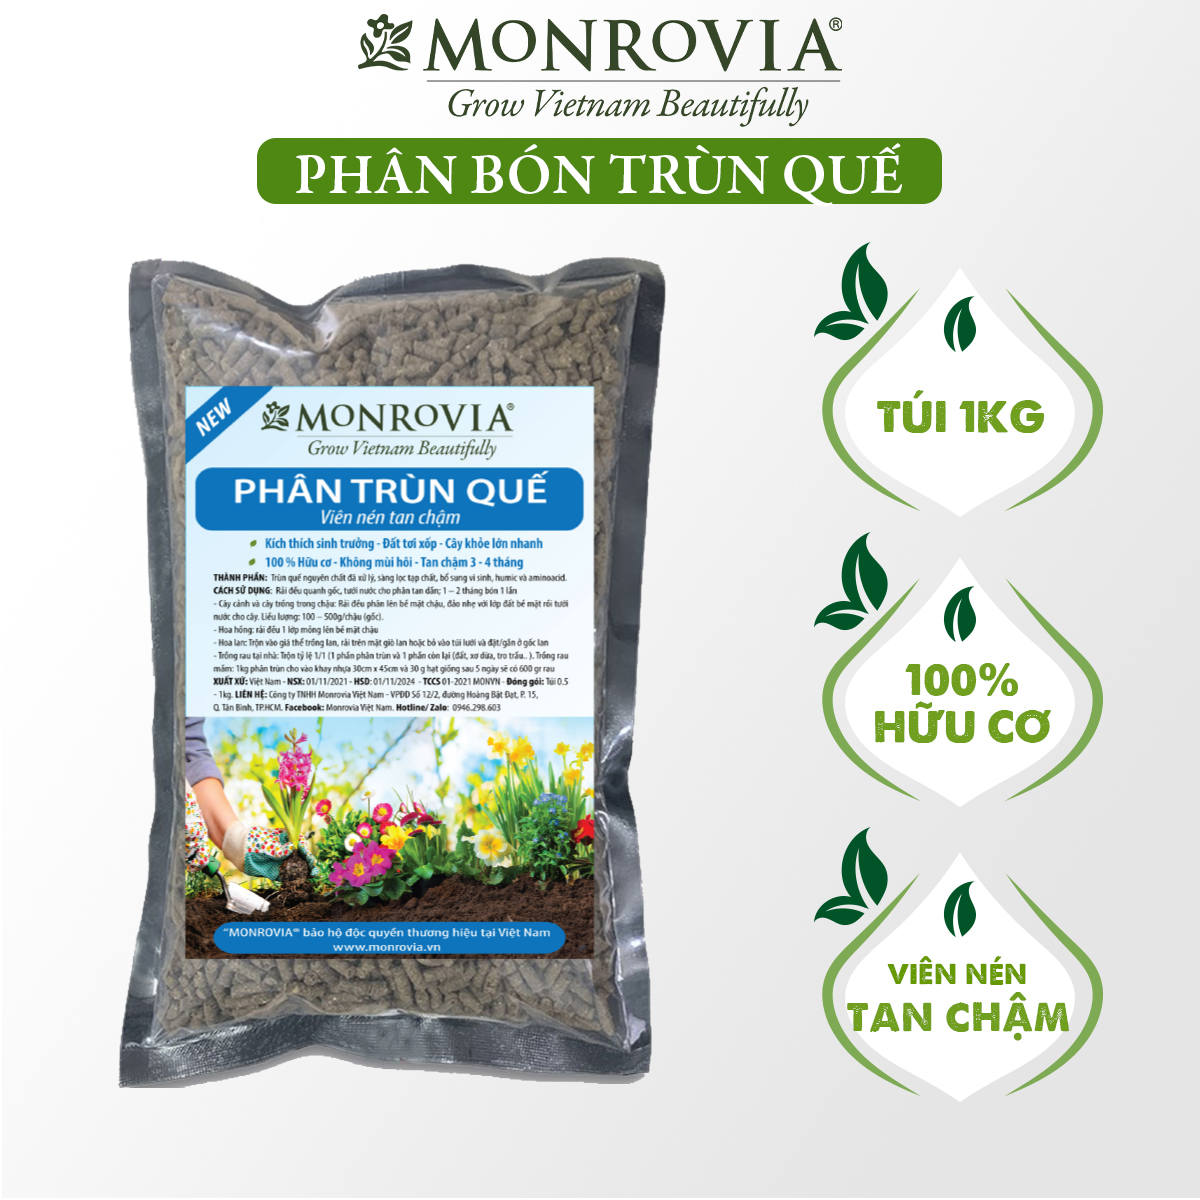 Phân trùn quế nguyên chất MONROVIA, viên nén tan chậm hữu cơ bón cho hoa hồng, lan, cây cảnh, rau củ quả